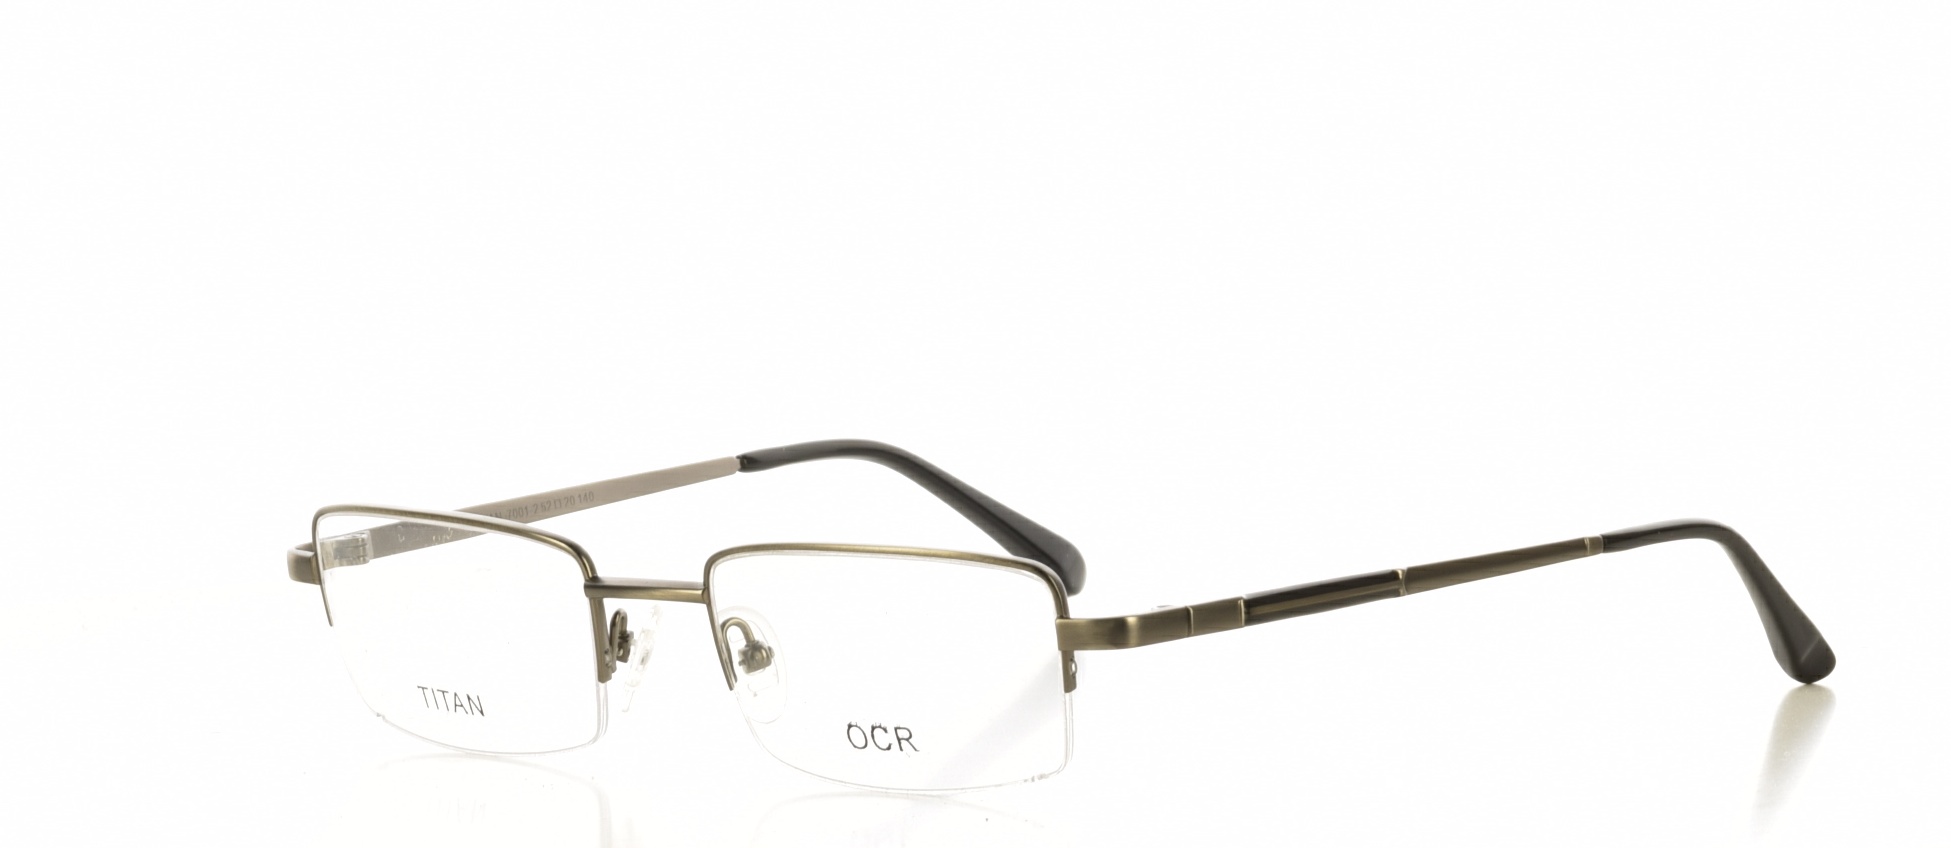 Rama ochelari vedere Optotec